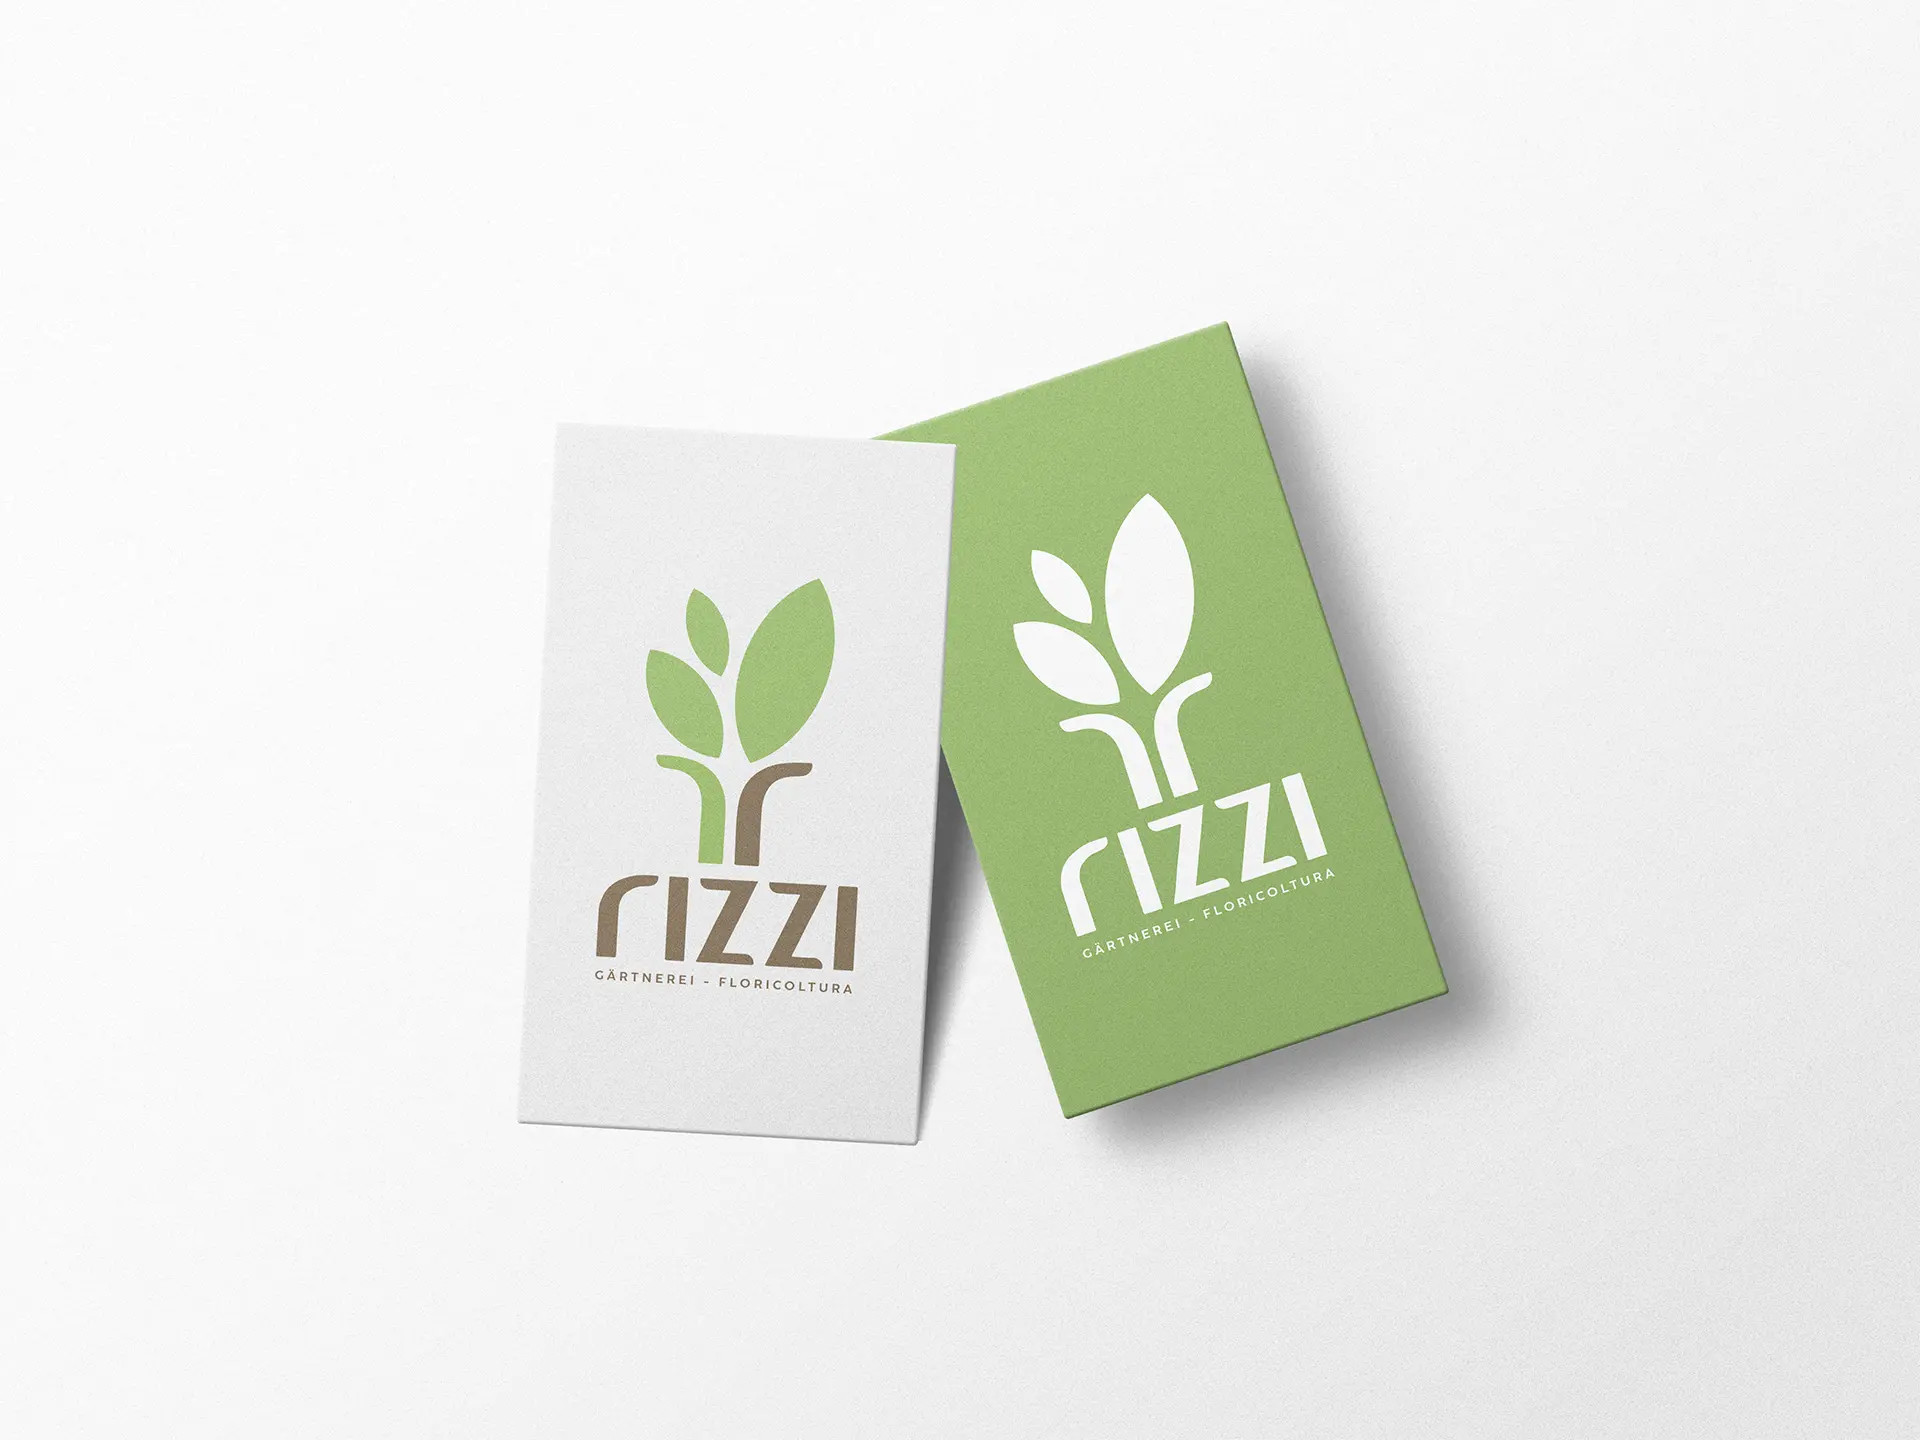 un-real-zampolini-biffi-gentili_rizzi-floricoltura-brand-design_1